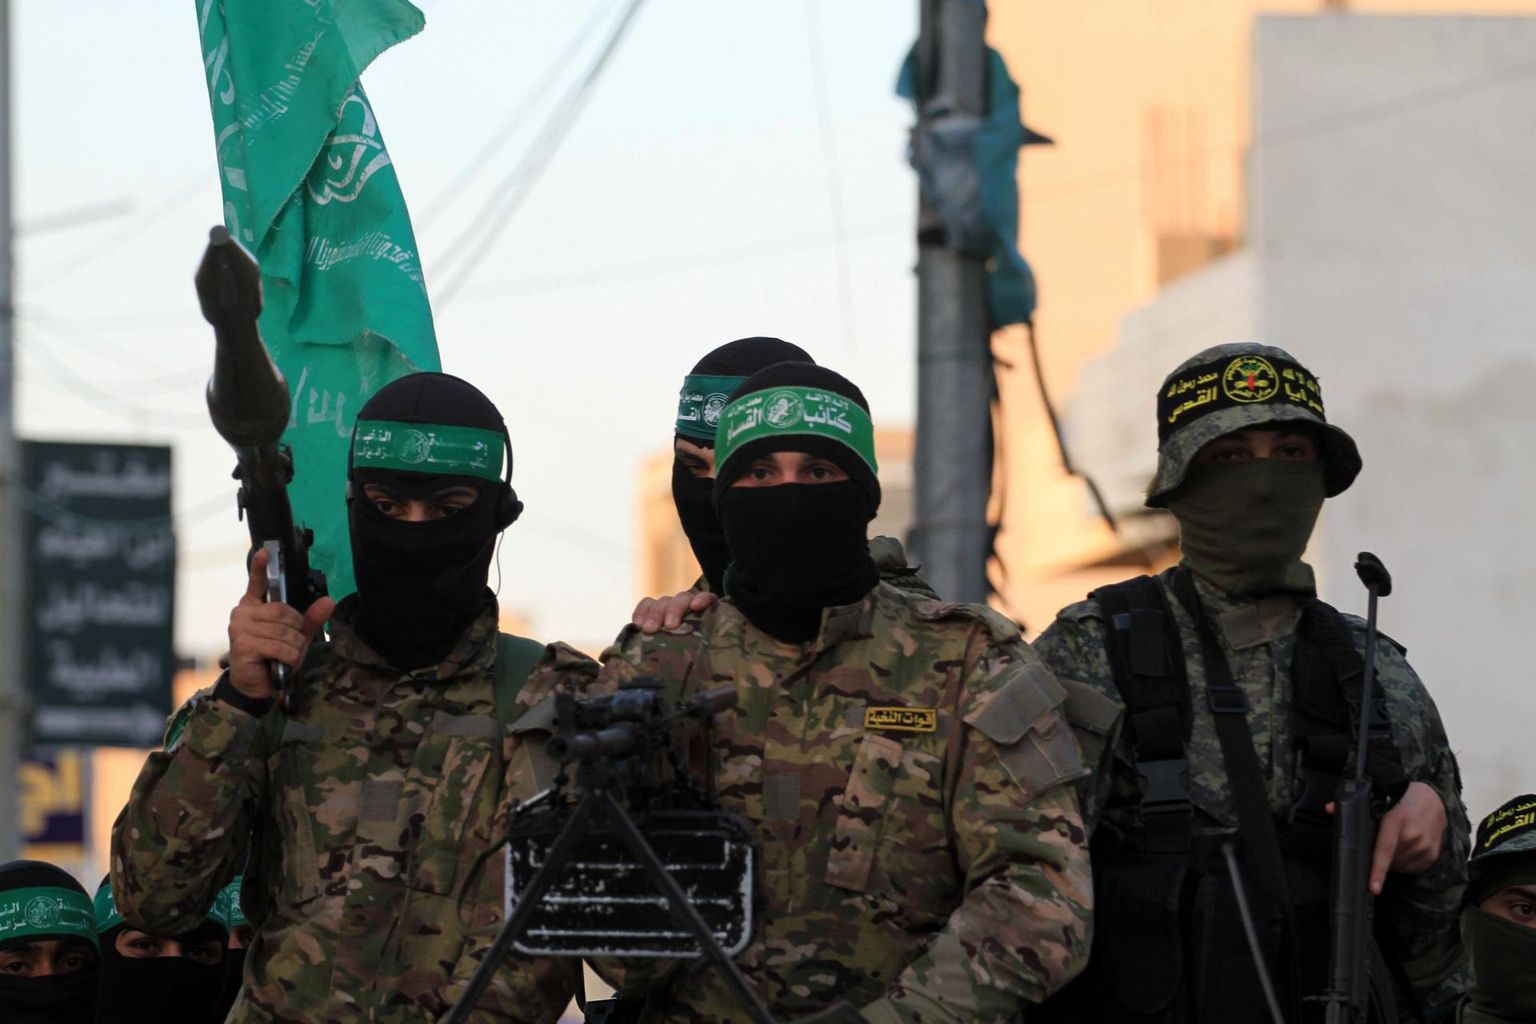 Palestiina sunniitidest araablaste organisatsioon Hamas on üks neist äärmusrühmitustest, mis on lõiganud kasu rahapesust.